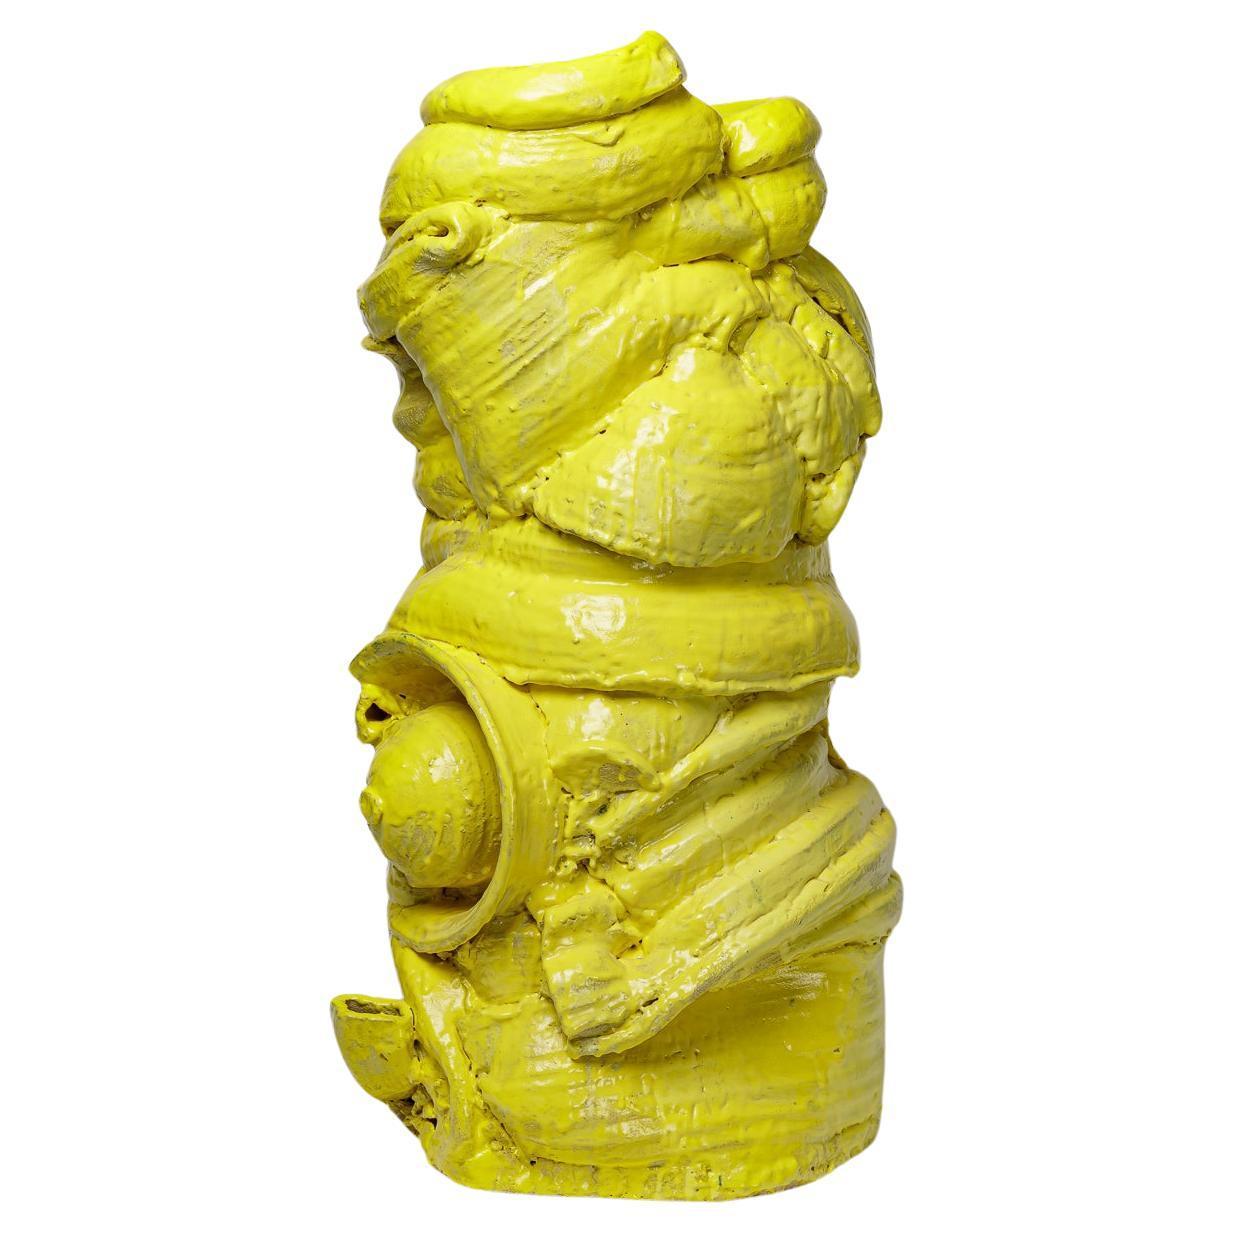 Grand vase de sol en céramique émaillée jaune de Patrick Crulis, 2023.